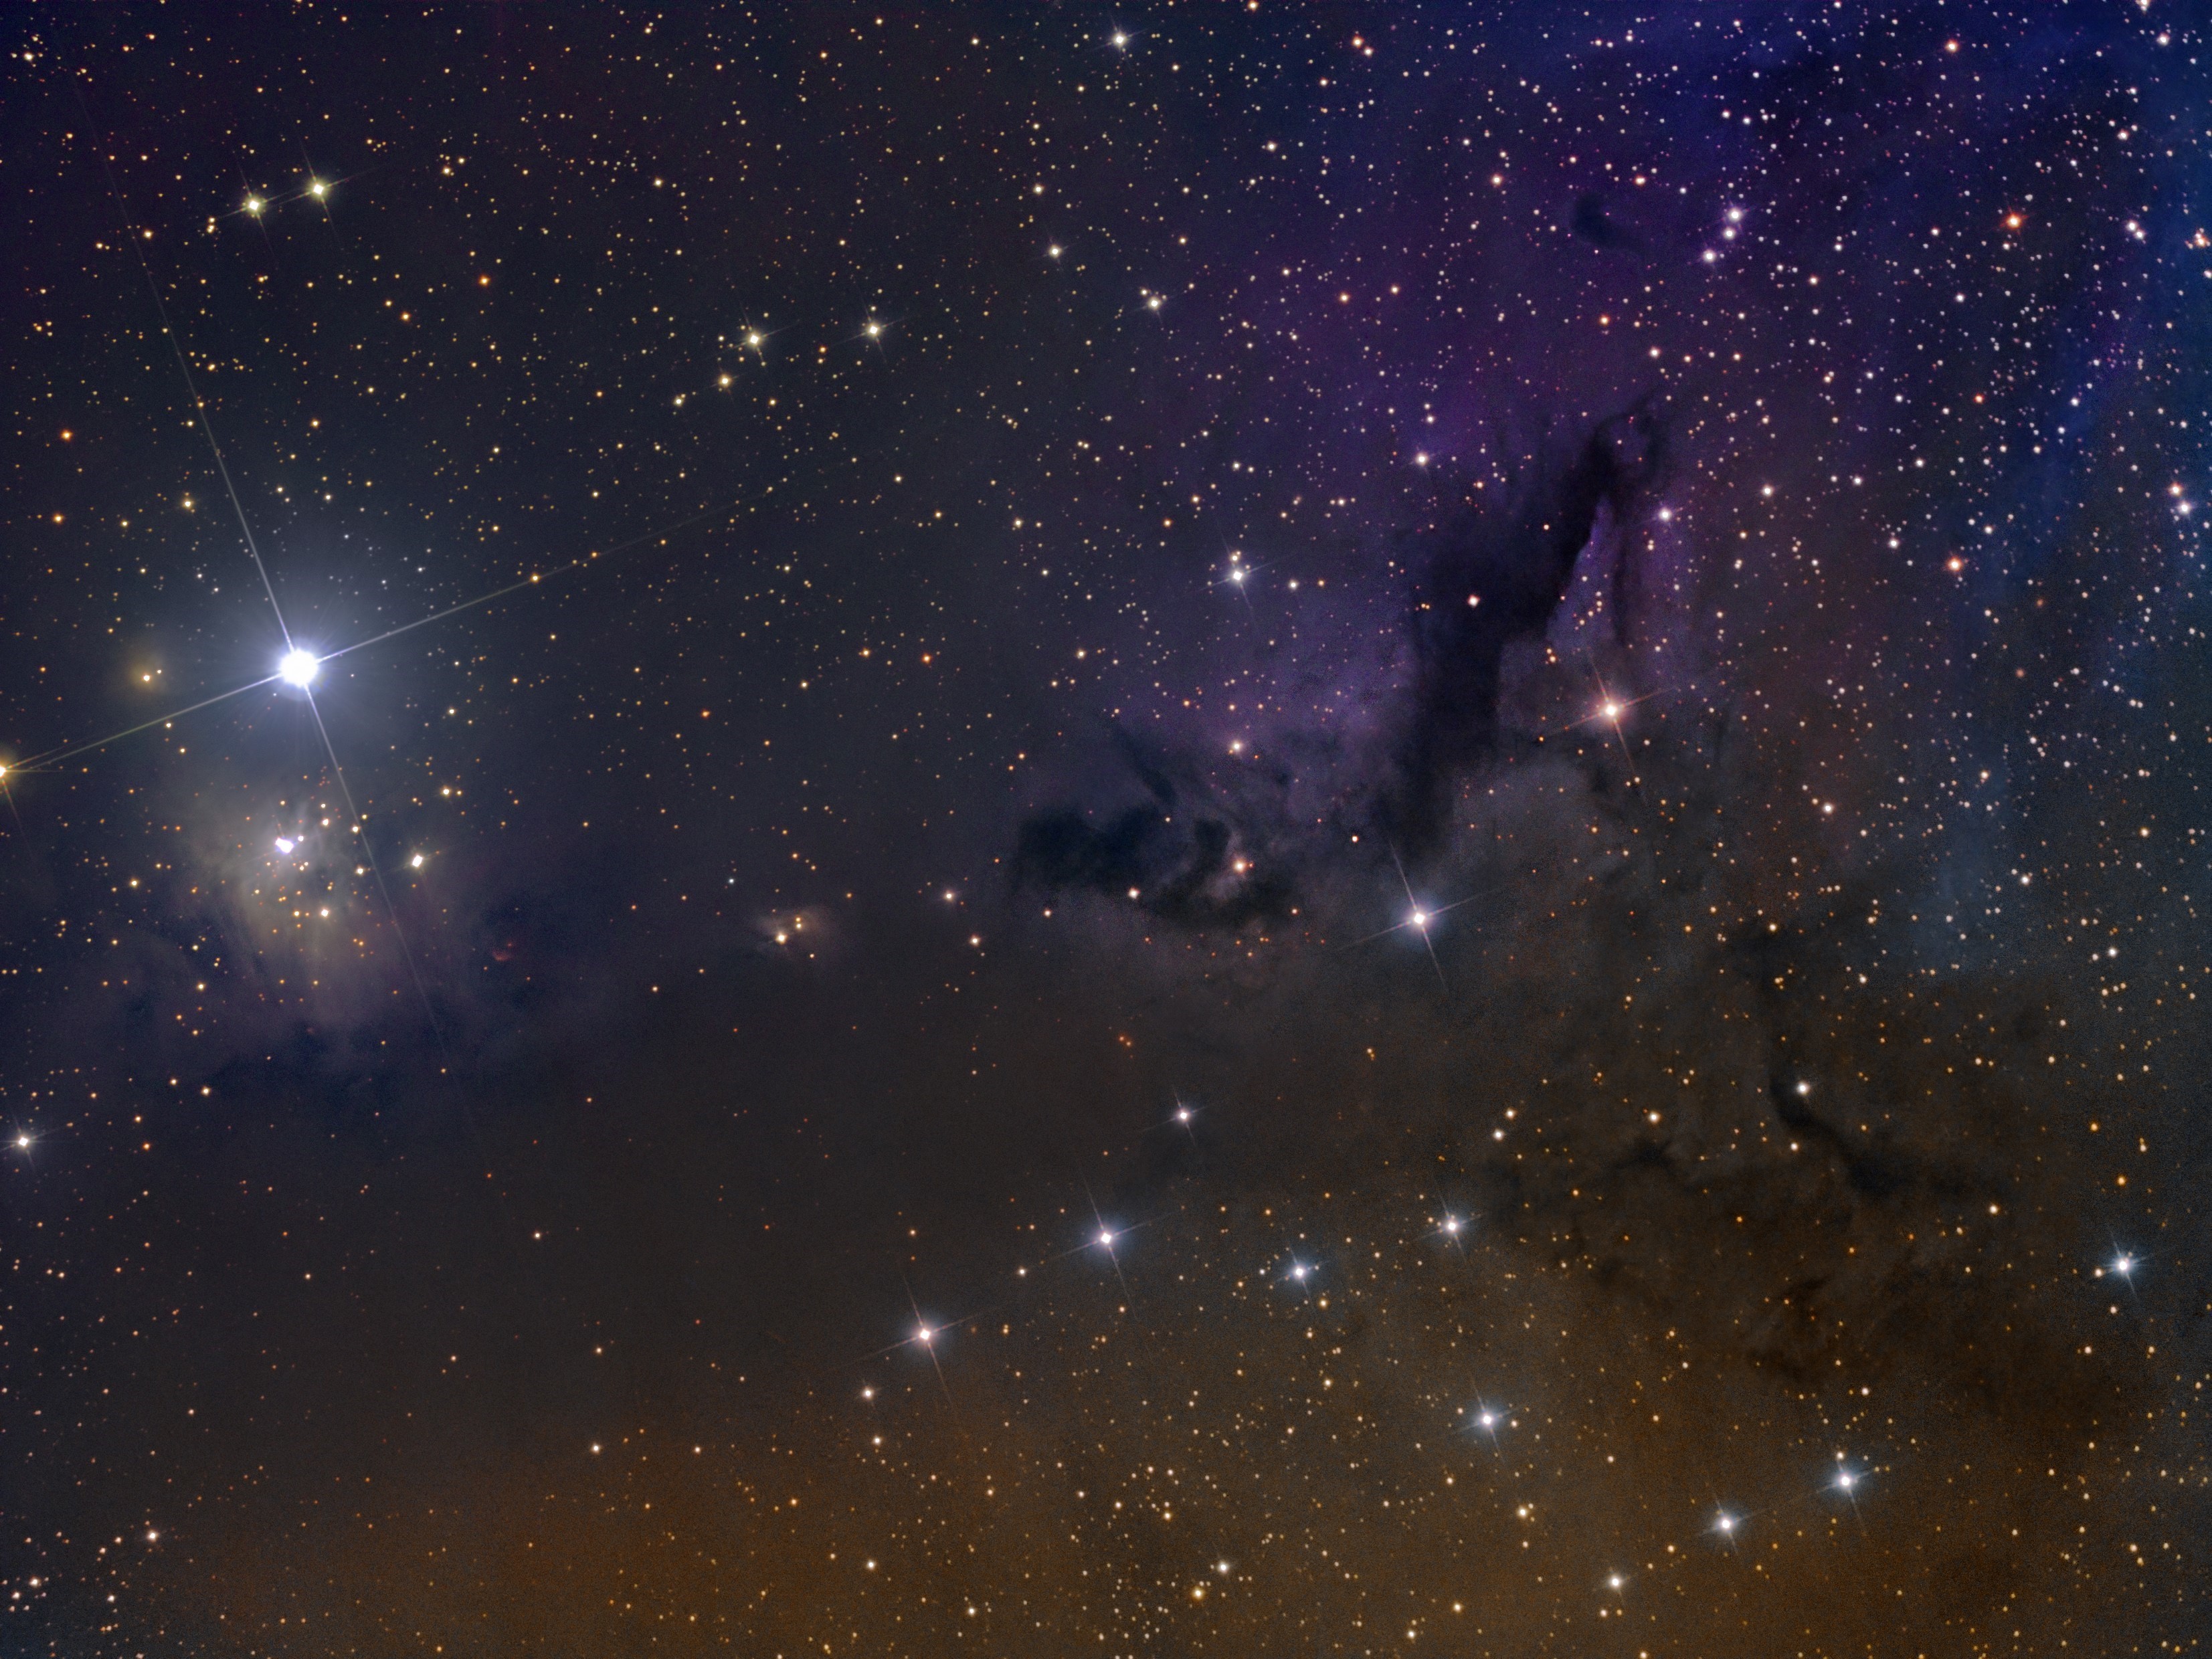 Nebula IC 348